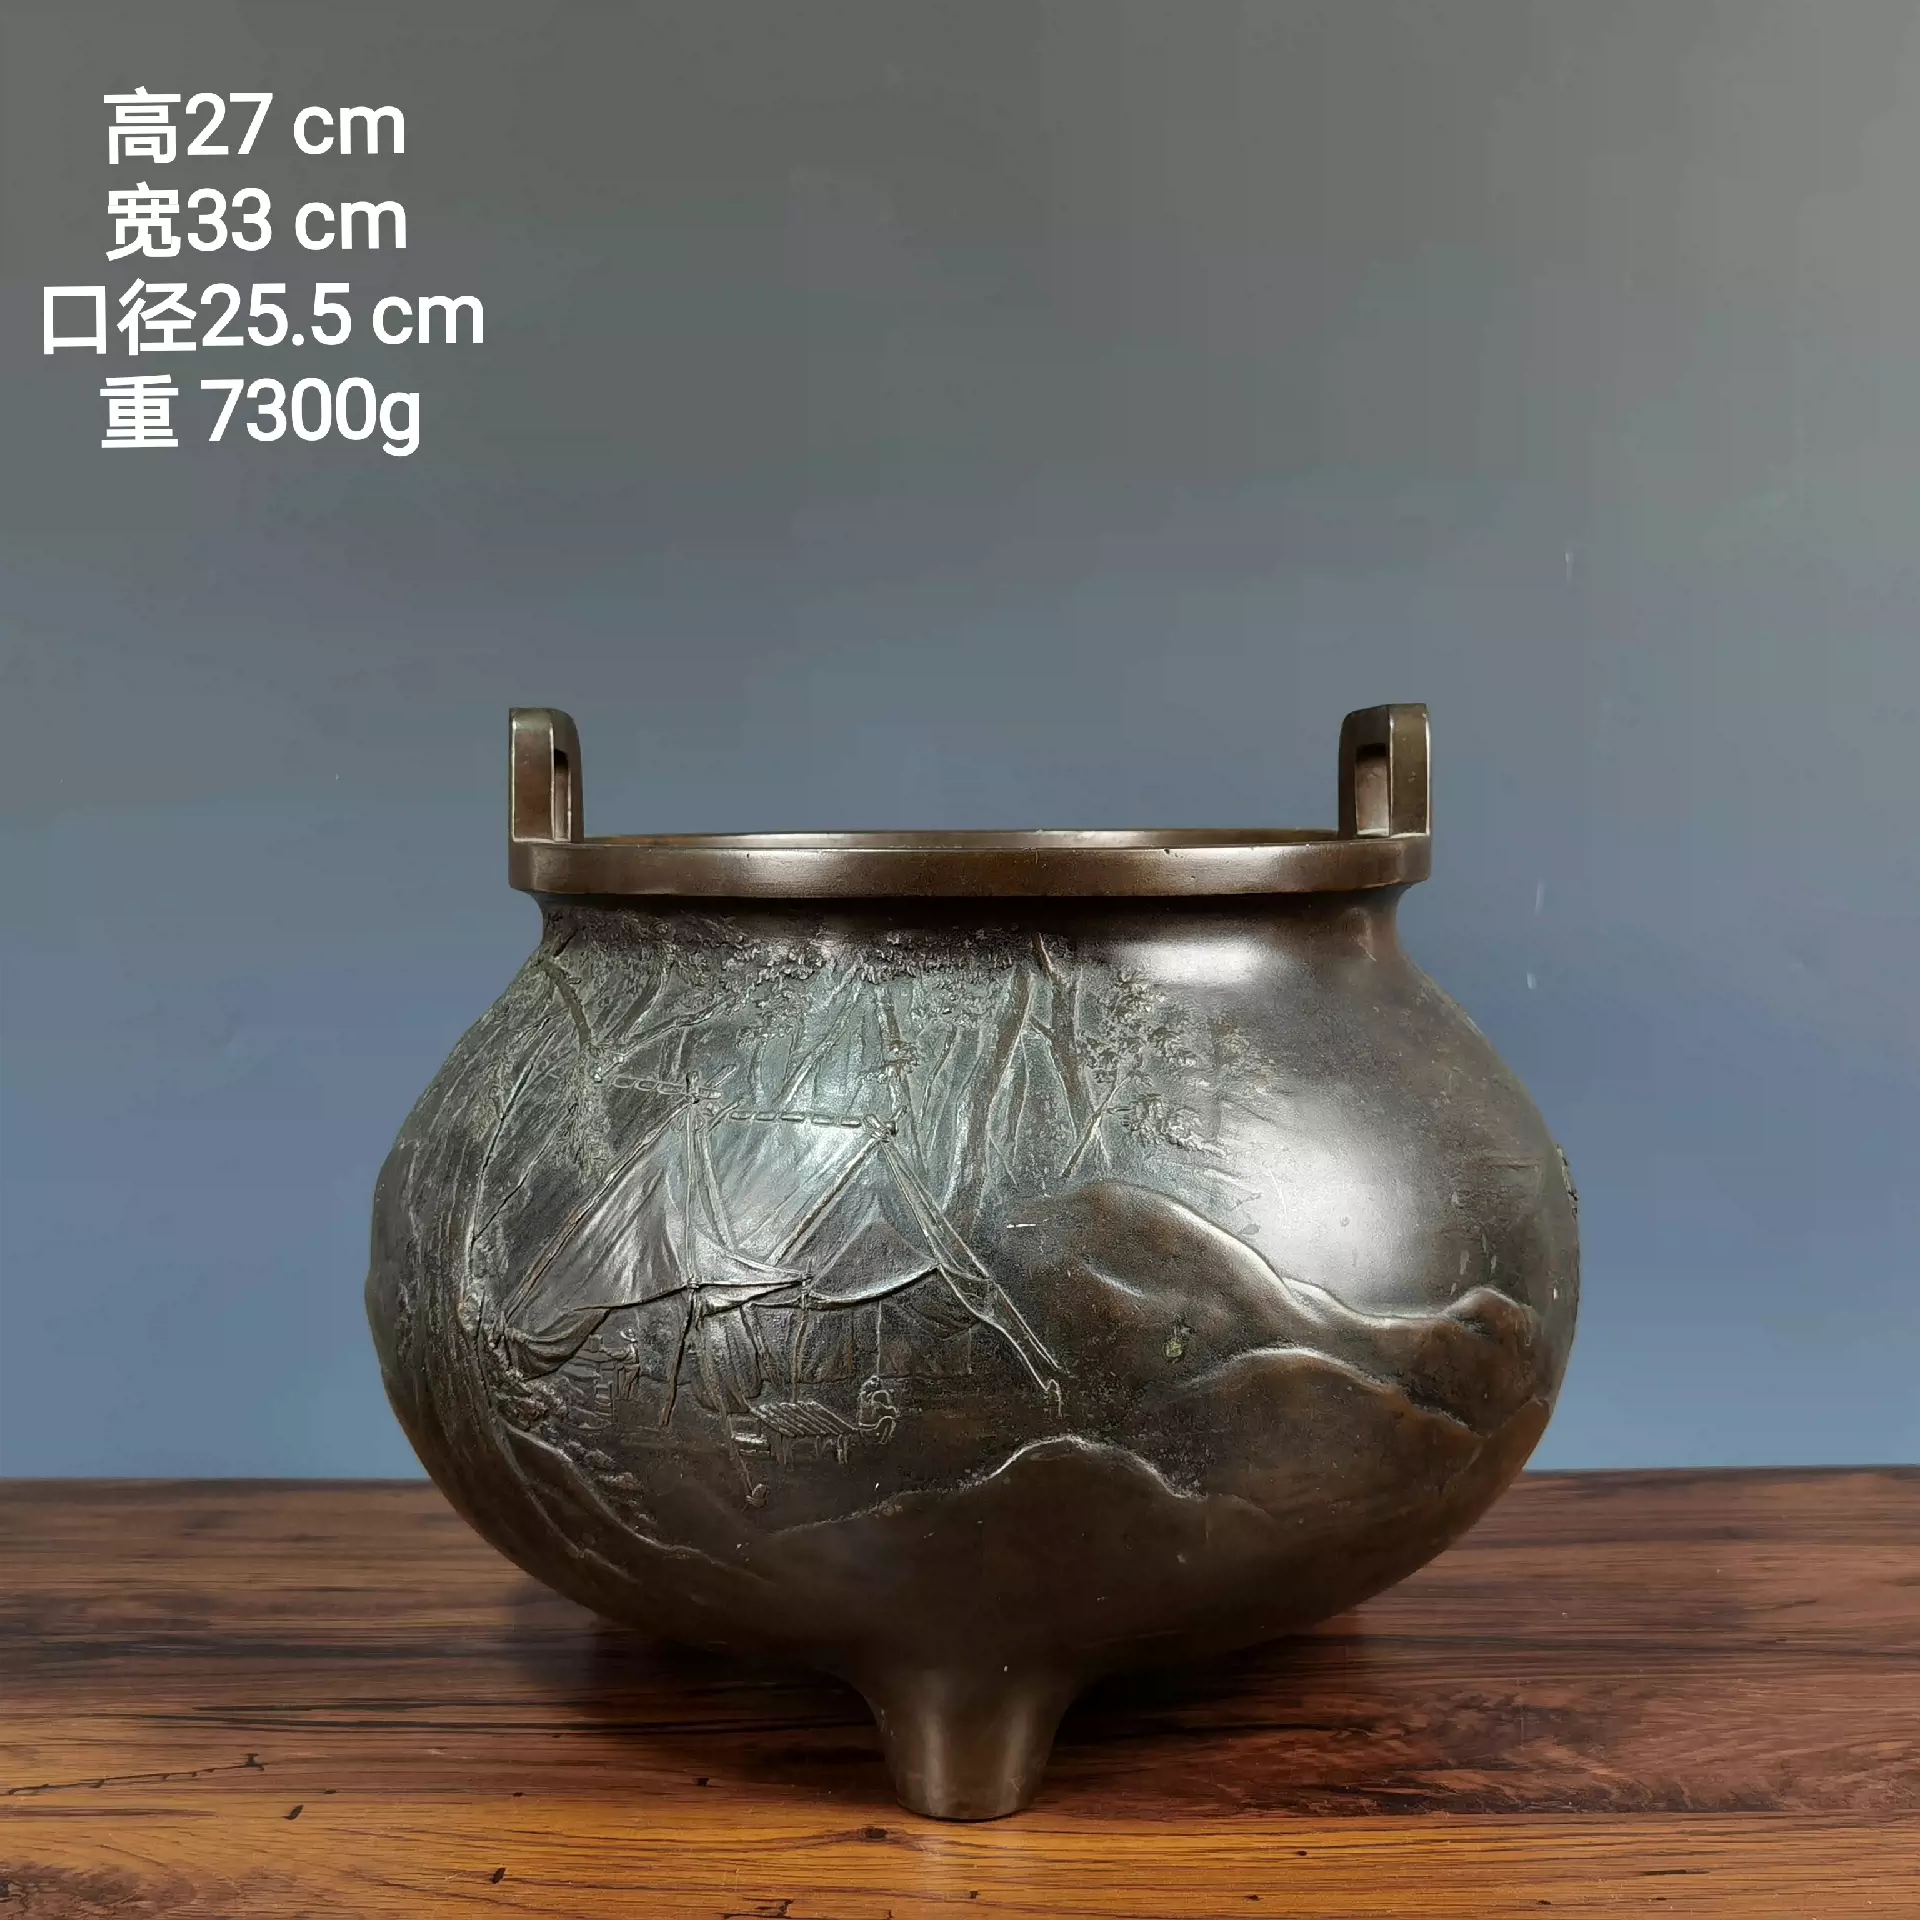 日本如雲三足鼎山水人物彫刻香炉火鉢置物细密古銅製茶道古美術收-Taobao